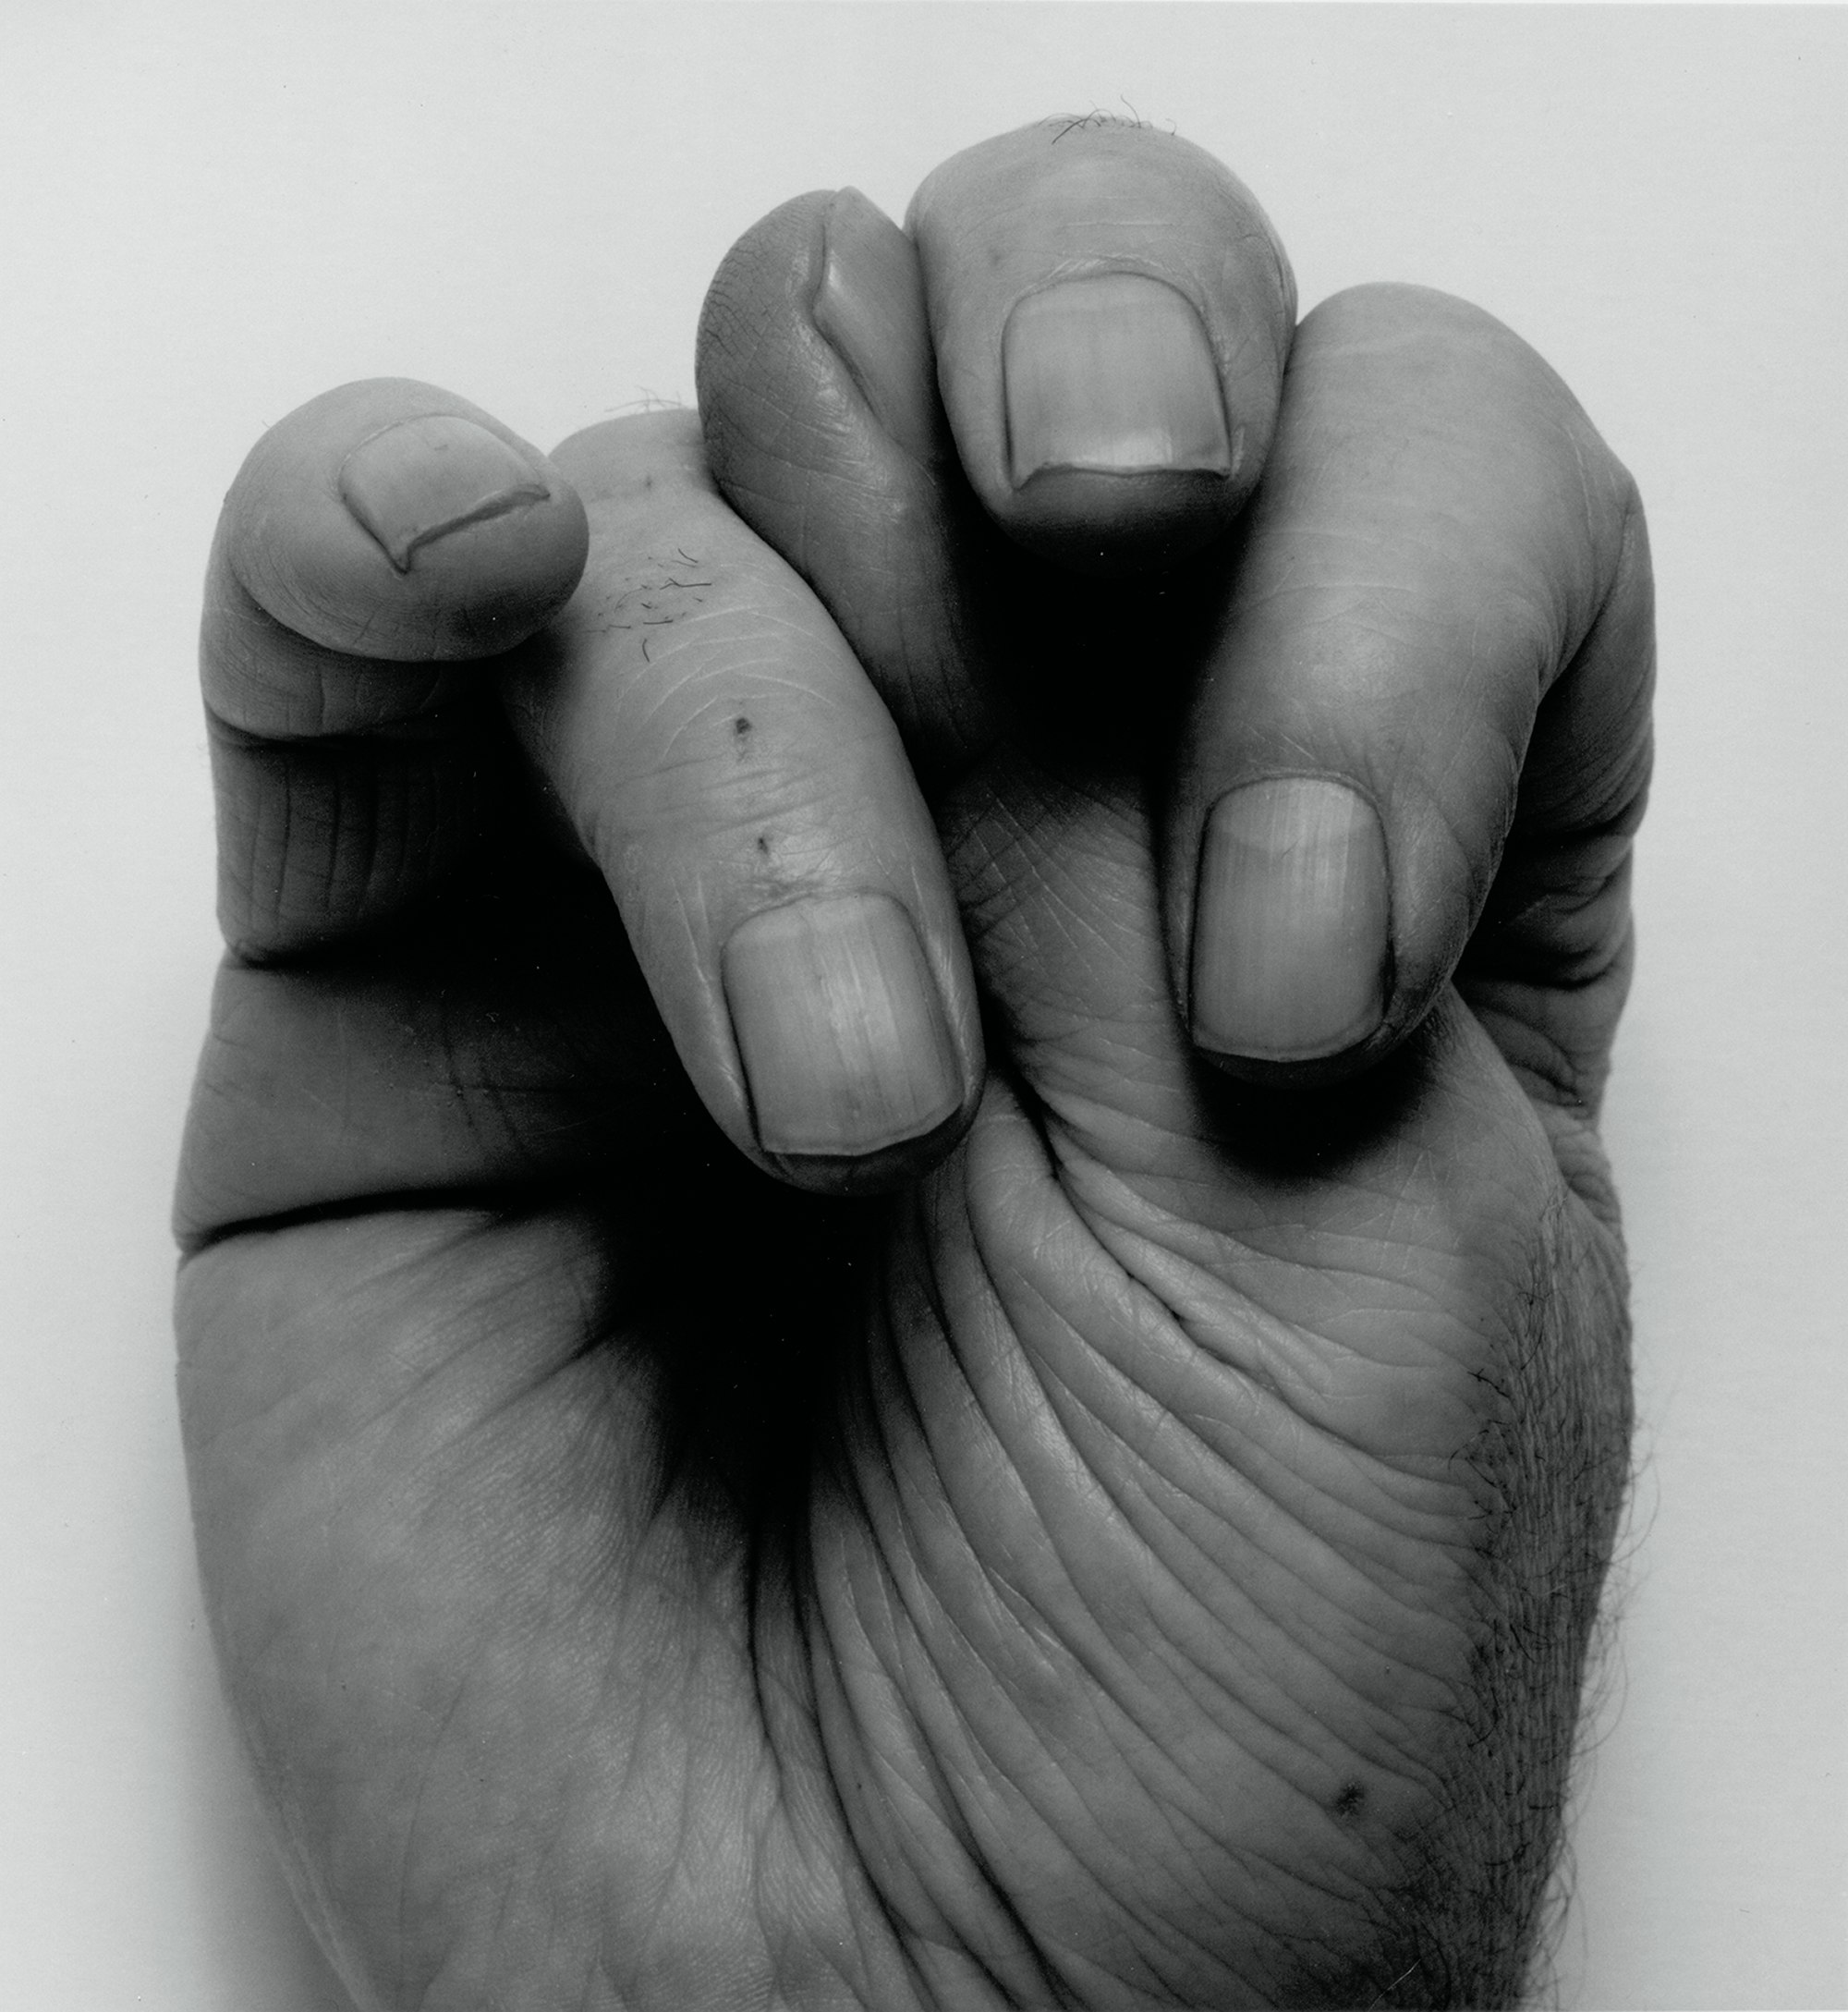 John Coplans, <em>Front Hand, Thumb Up, Middle</em>, 1988. Courtesy Fondation Henri Cartier-Bresson.